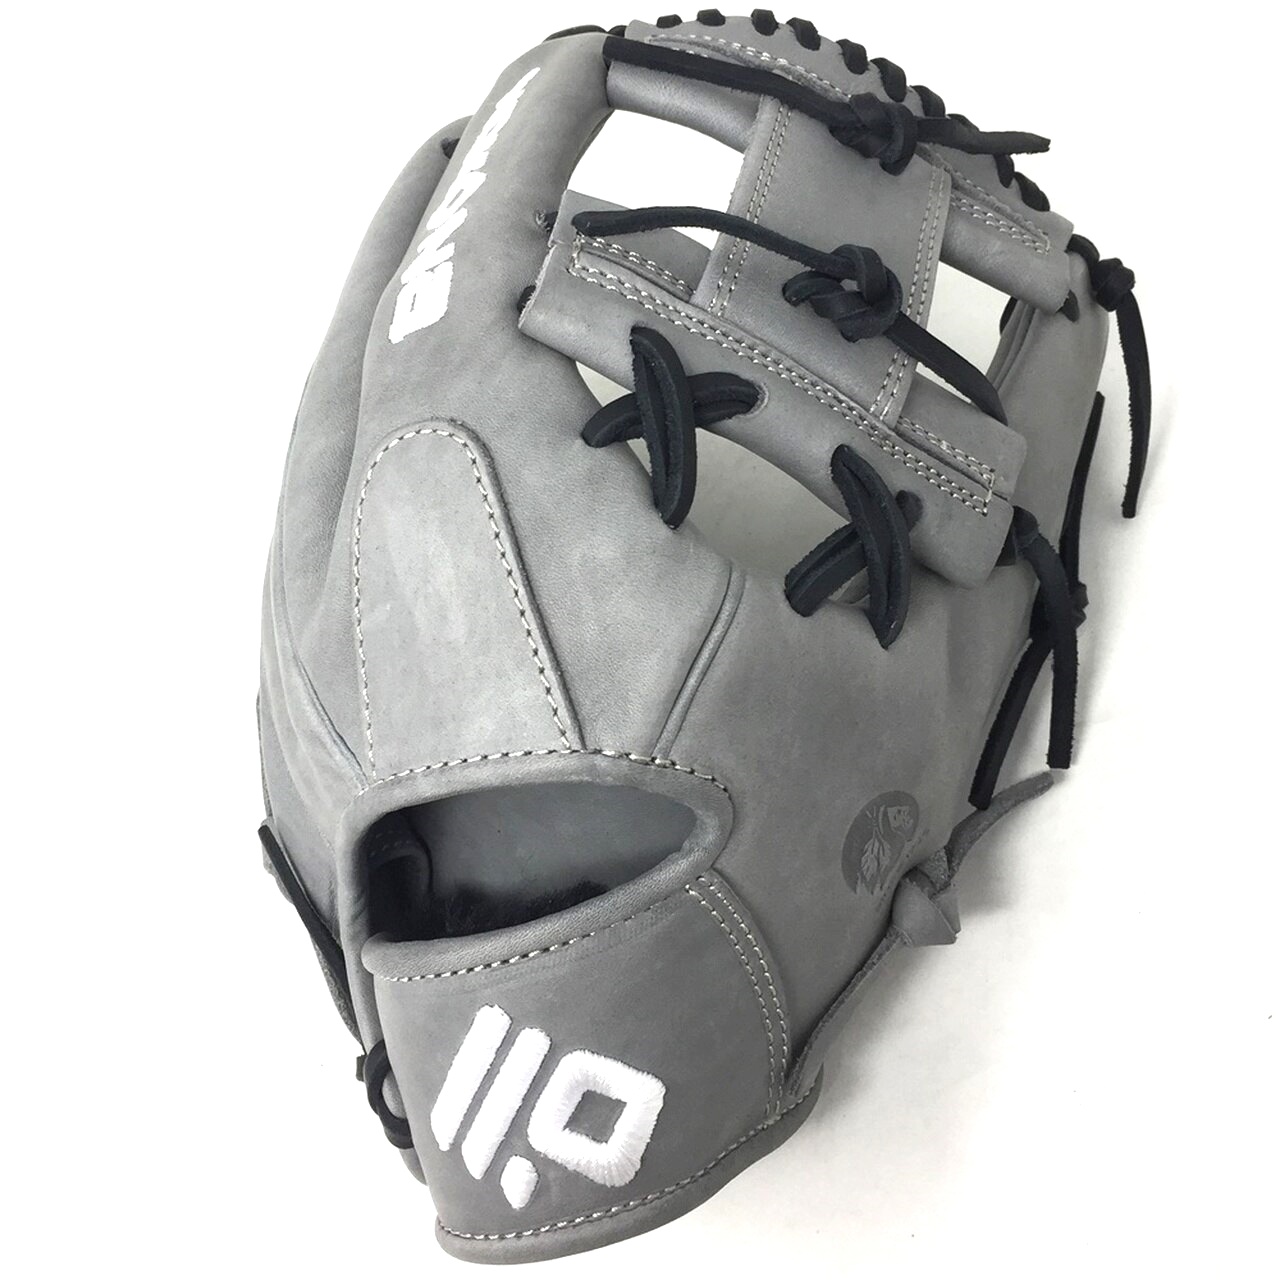 nokona-american-kip-14u-gray-with-black-laces-11-25-baseball-glove-i-web-right-hand-throw A-200I-GR-BK-RightHandThrow Nokona Does Not Apply This Nokona glove is made with stiff American Kip Leather. This